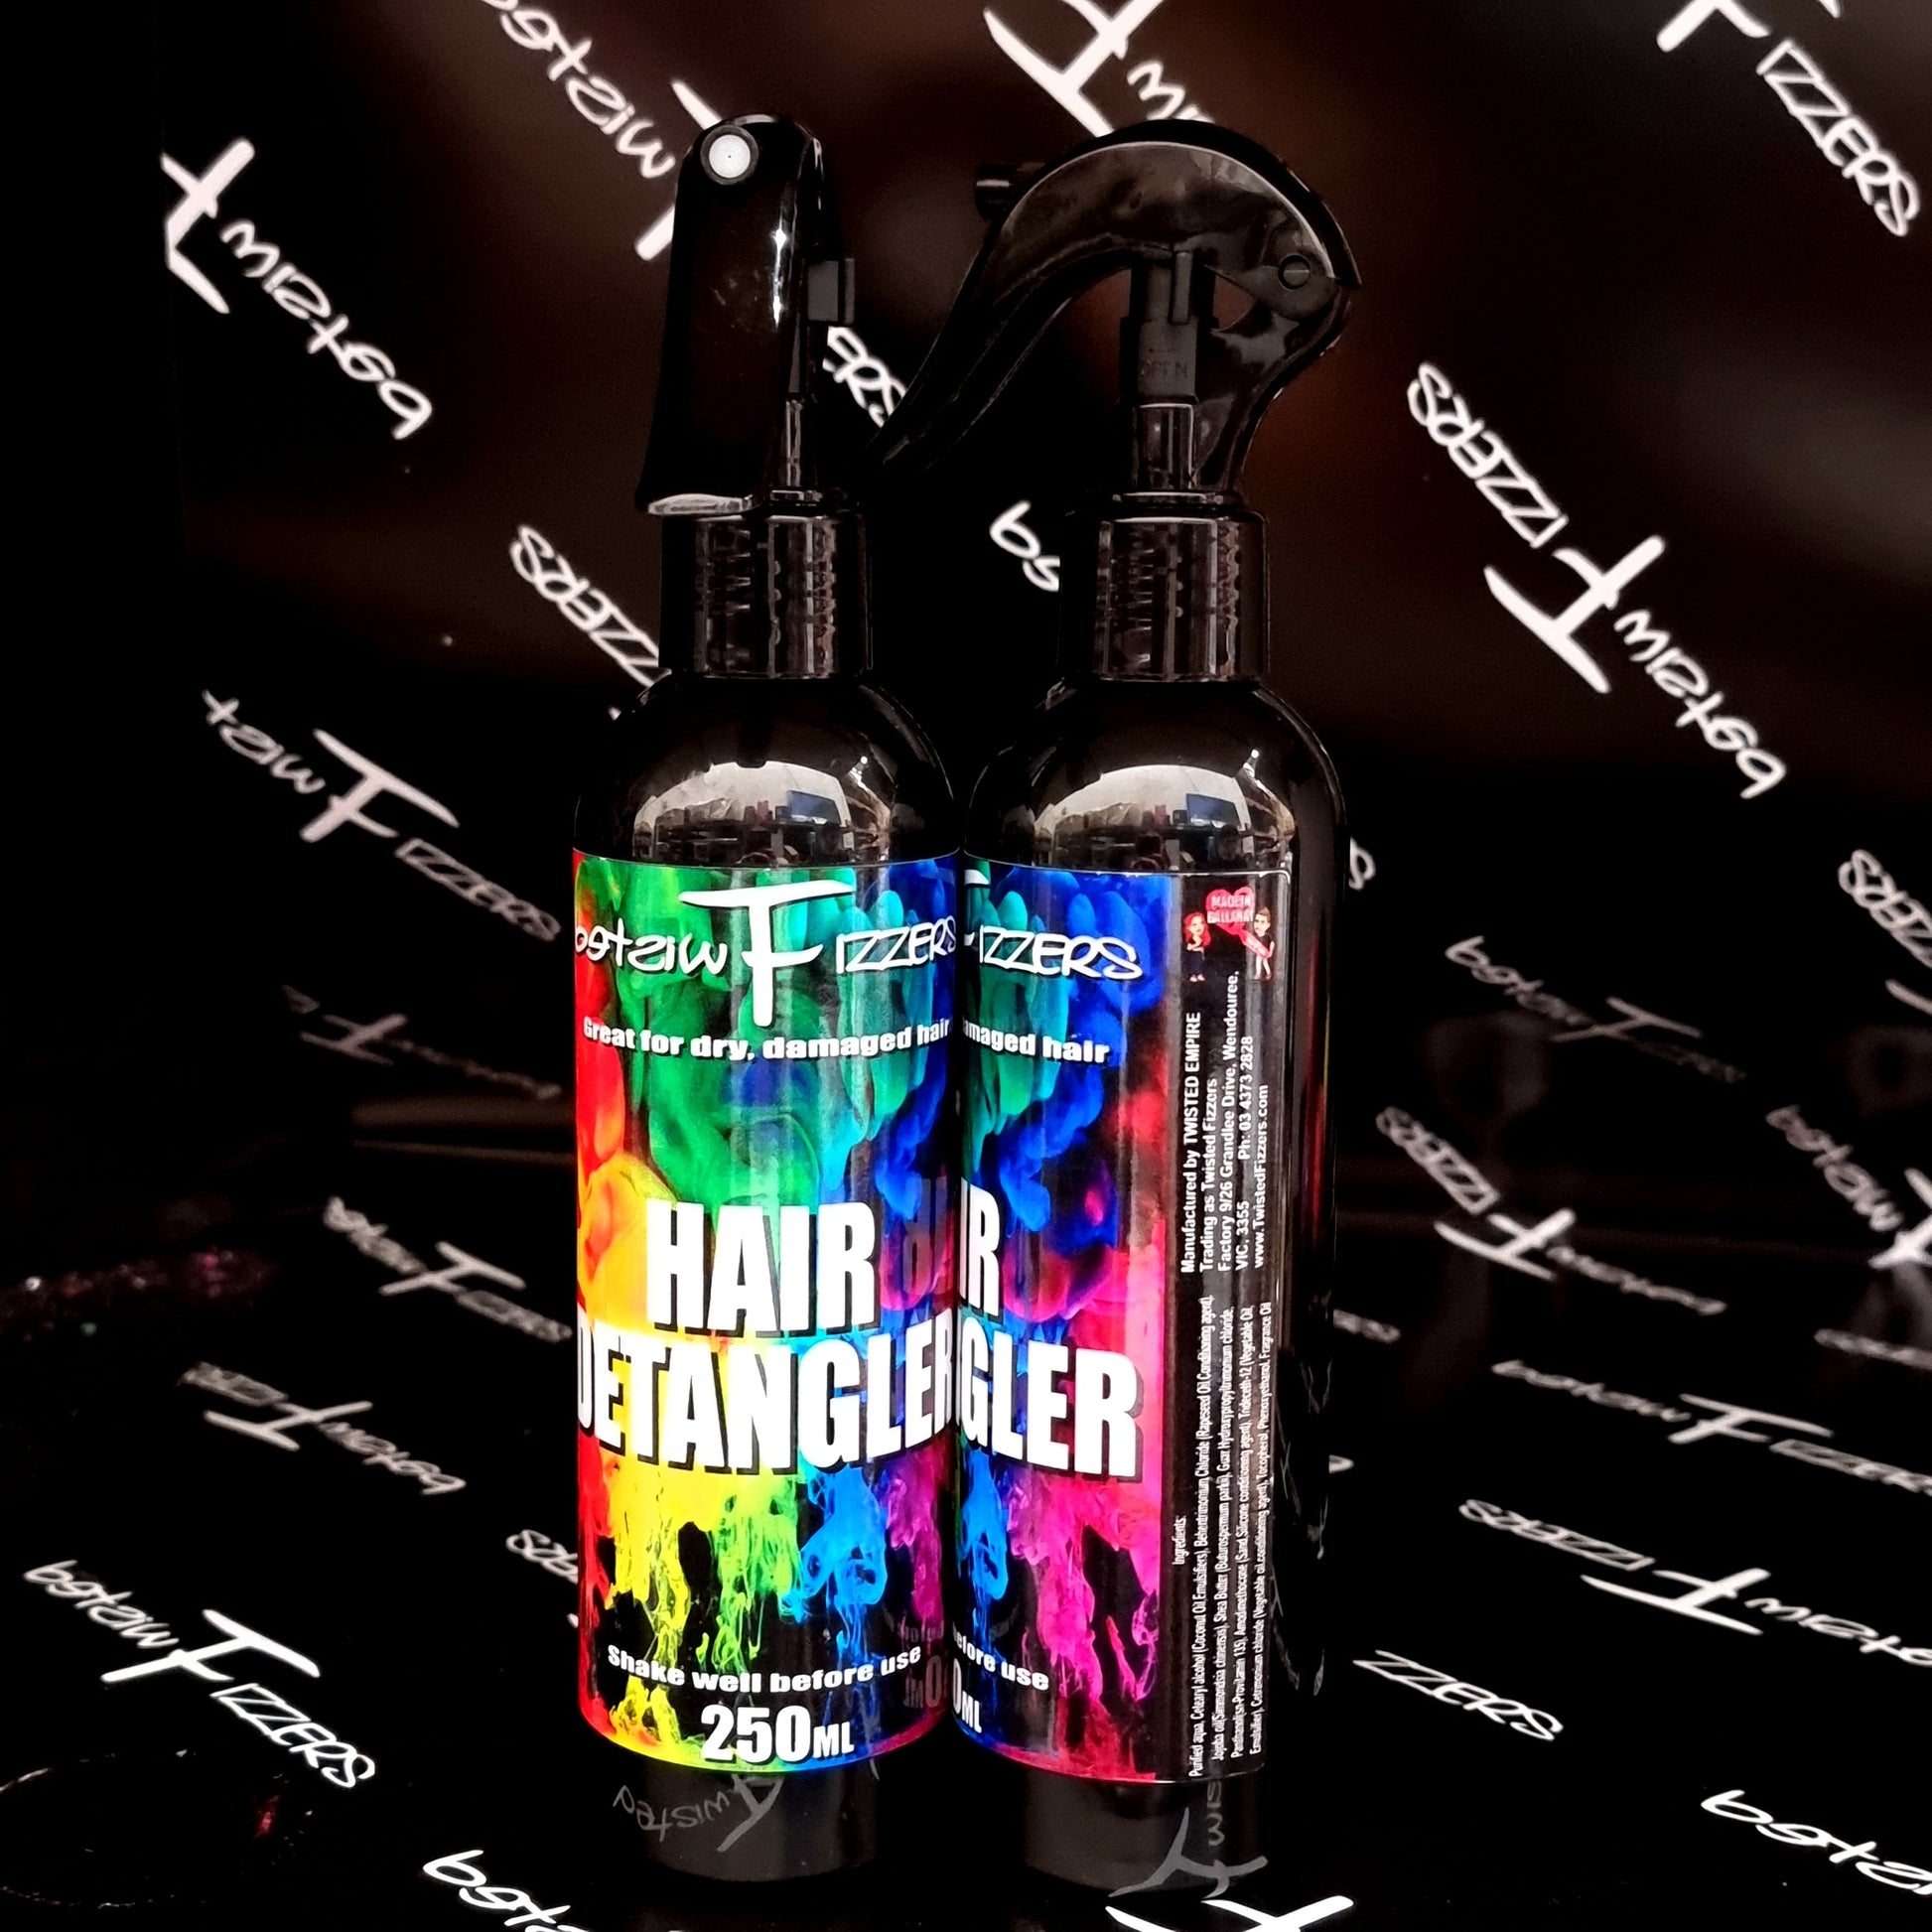 Hair Detangler - 250ml Spray Bottle